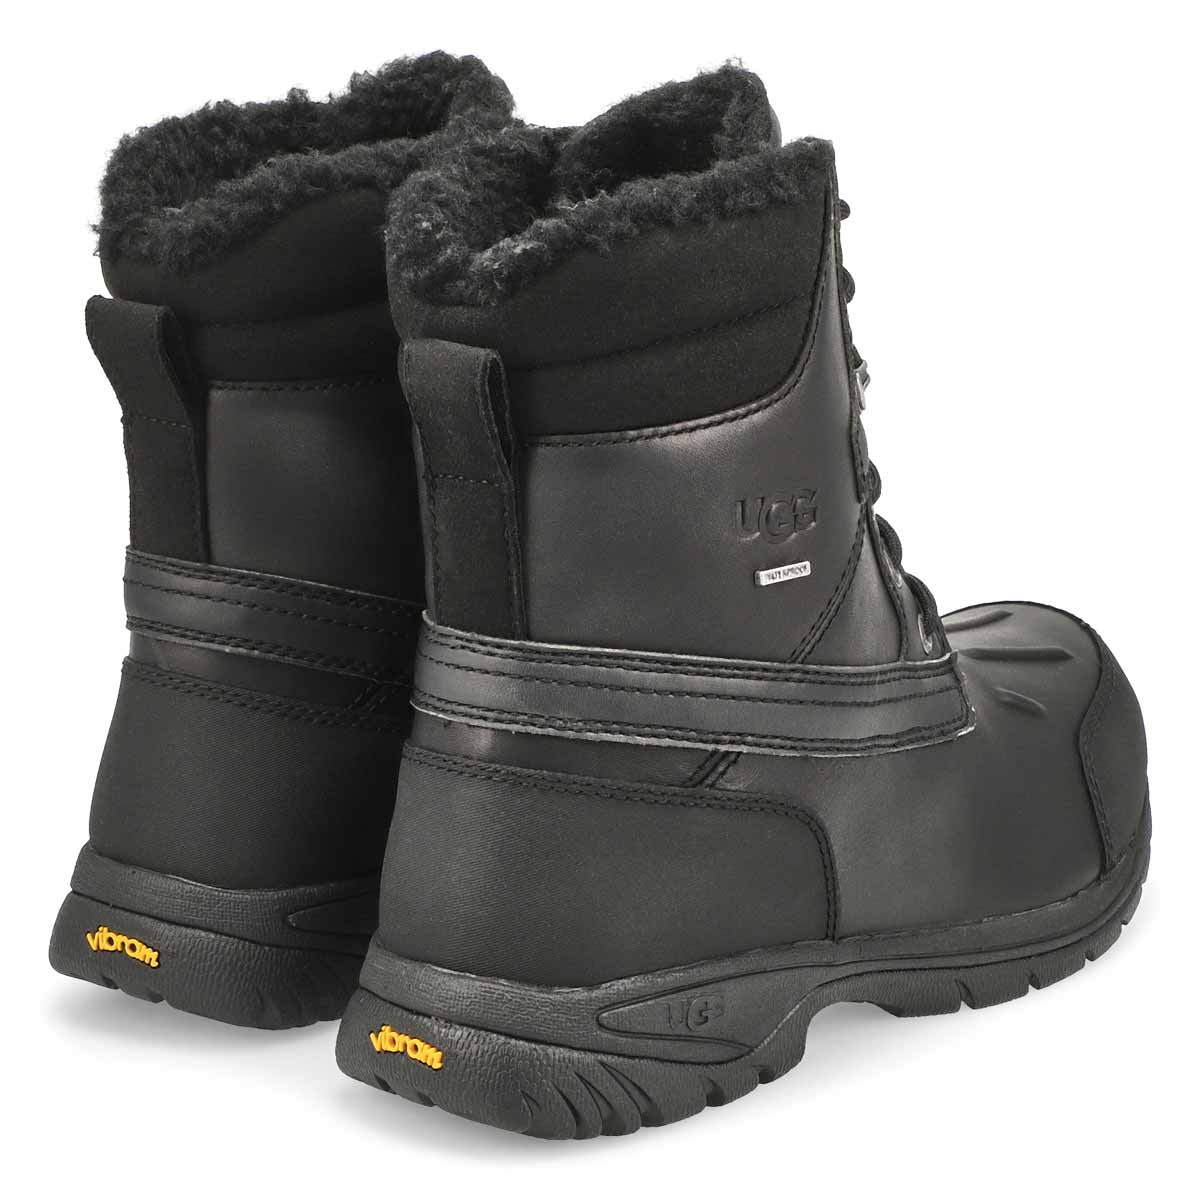 Men's Felton Winter Boot - Black